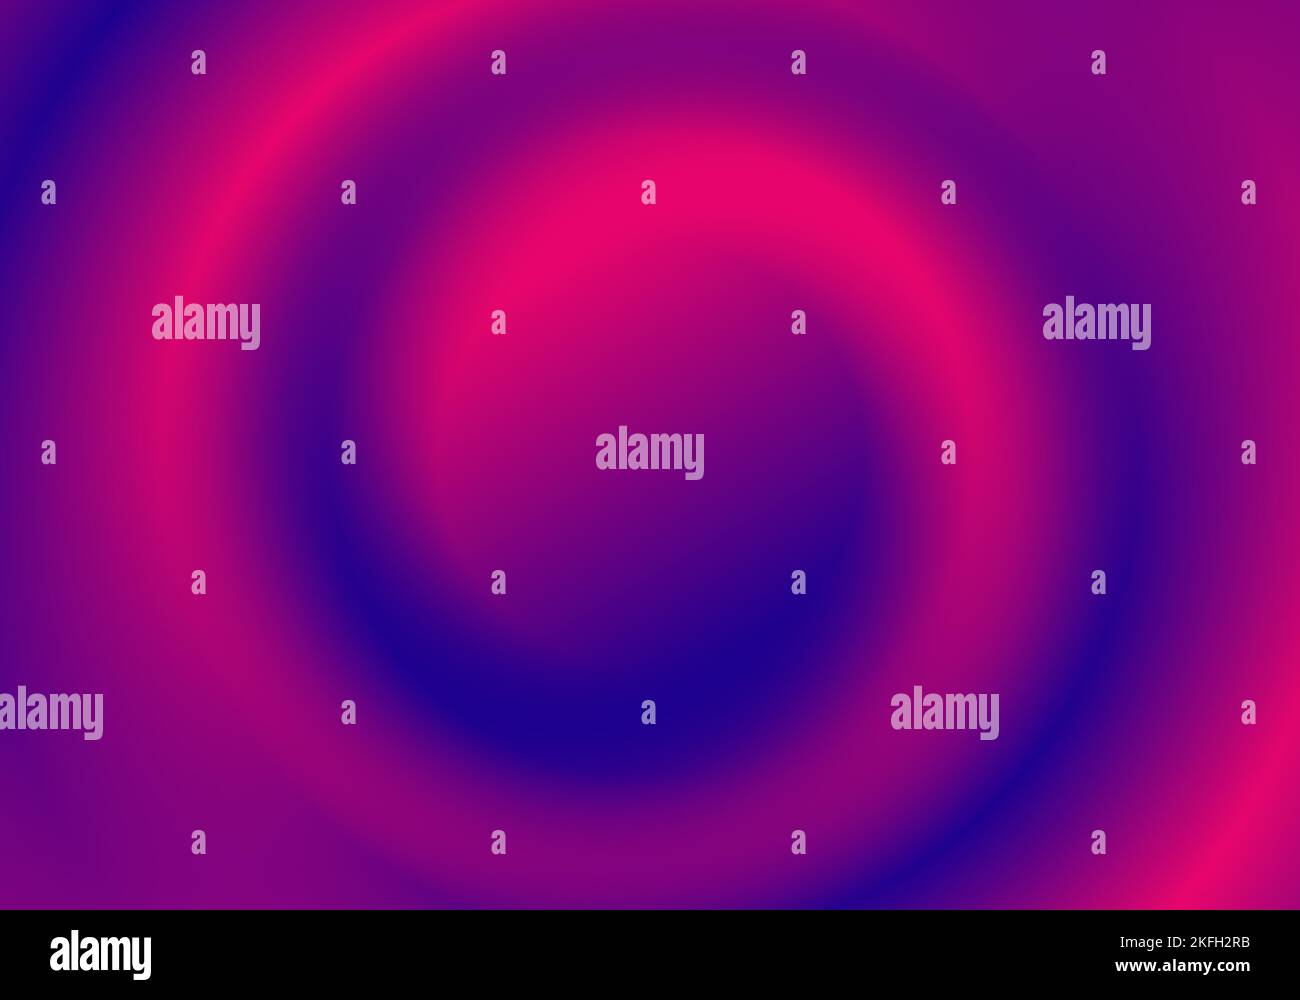 Abstrait 3D couleur dégradé bleu et rose tourbillon cercle convexe fond style minimal. Illustration vectorielle Illustration de Vecteur